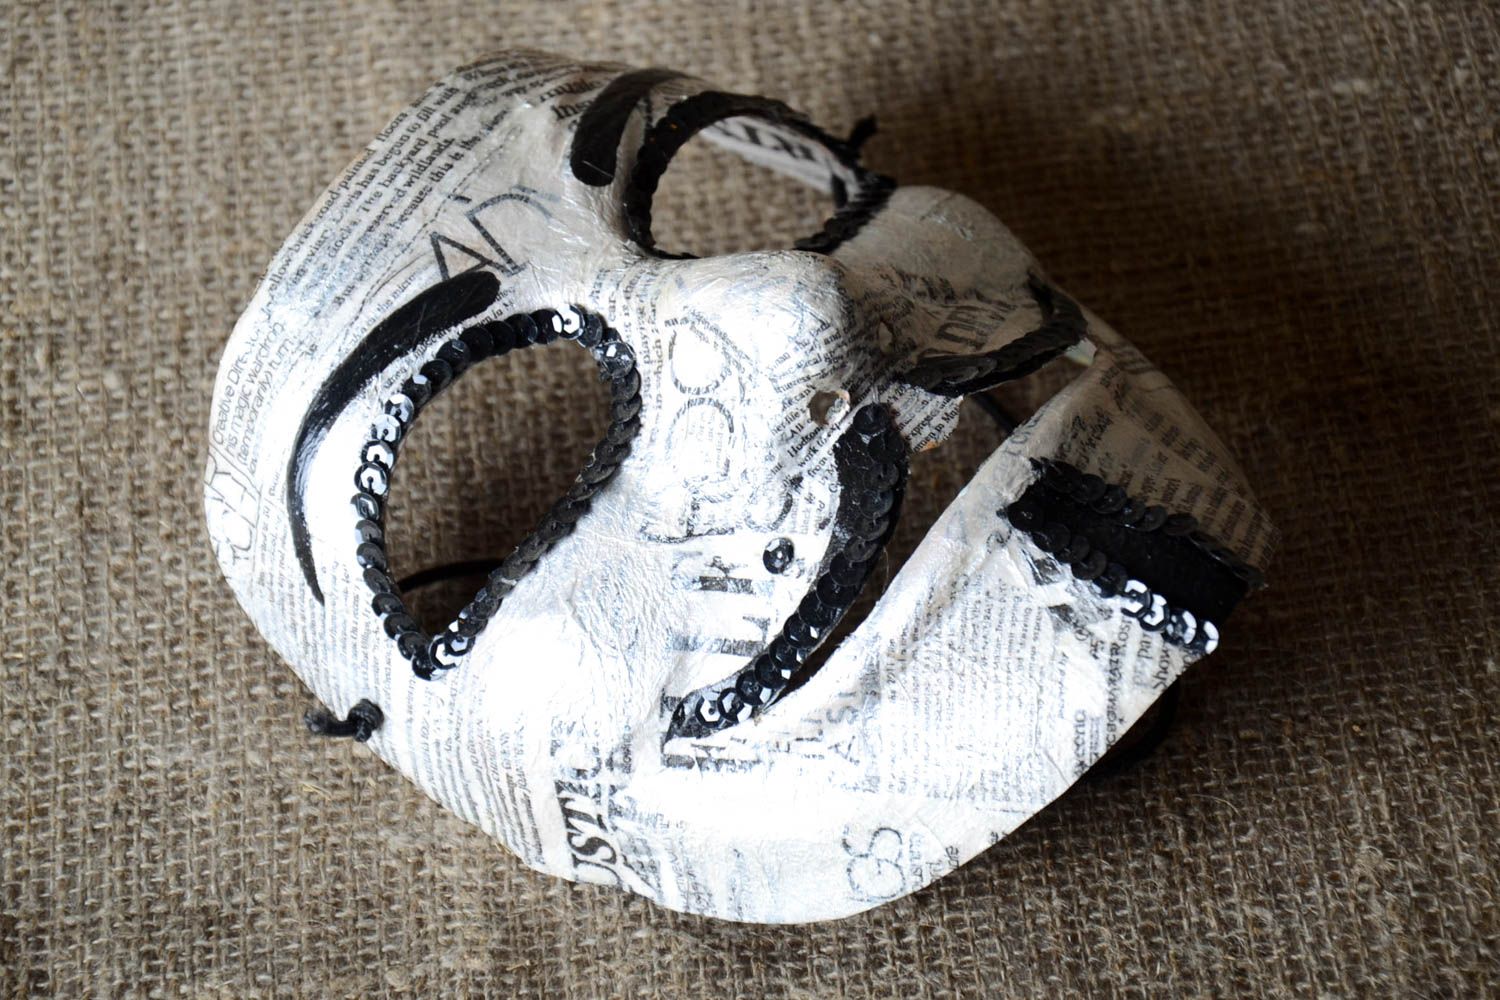 Handmade Pappmache Idee Geschenk für Mann venezianische Maske festlich grell foto 1